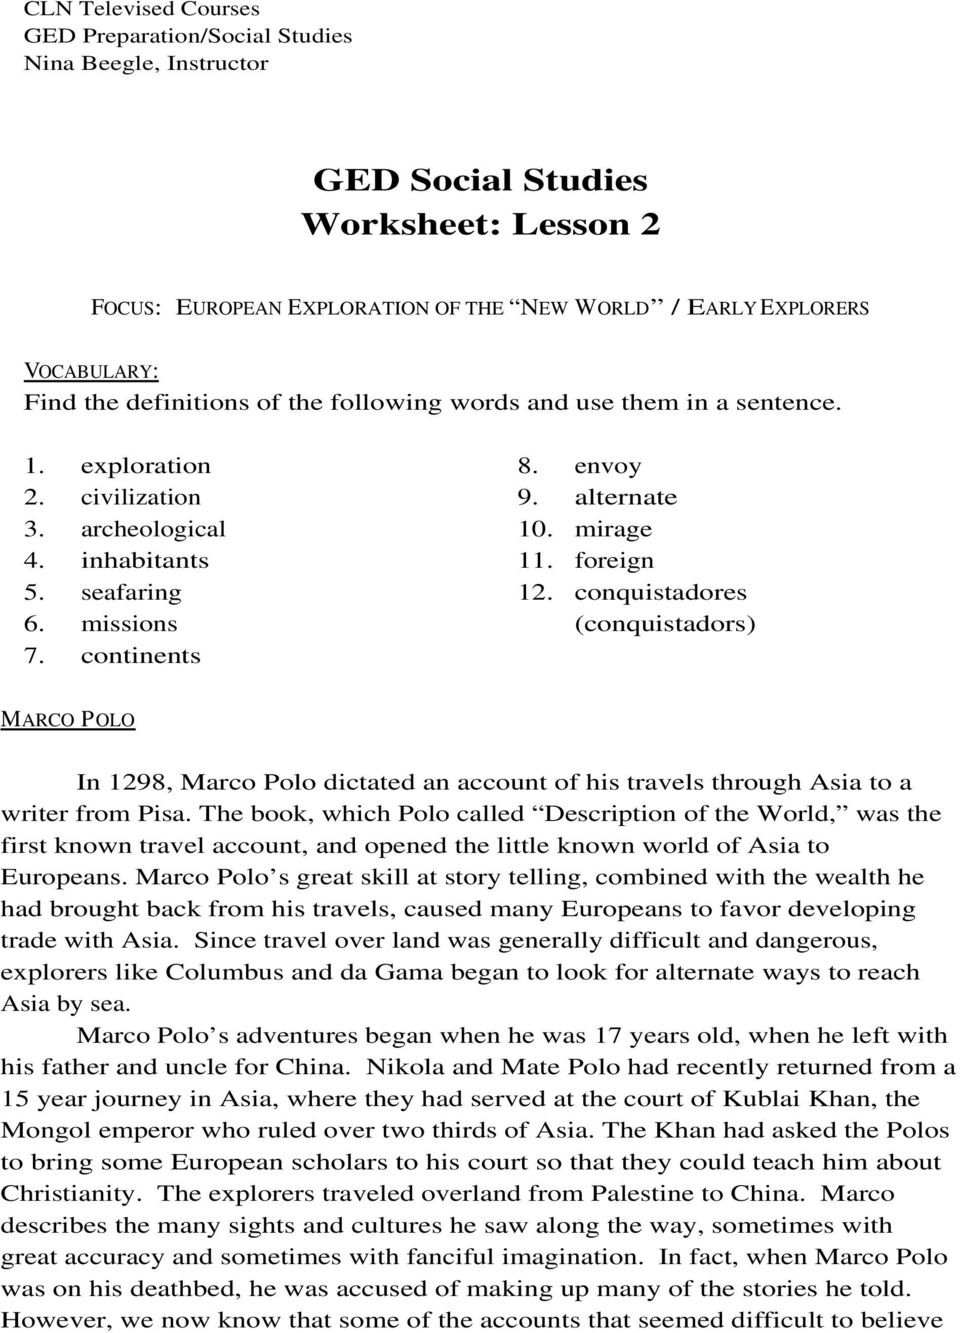 free-printable-ged-worksheets-peggy-worksheets